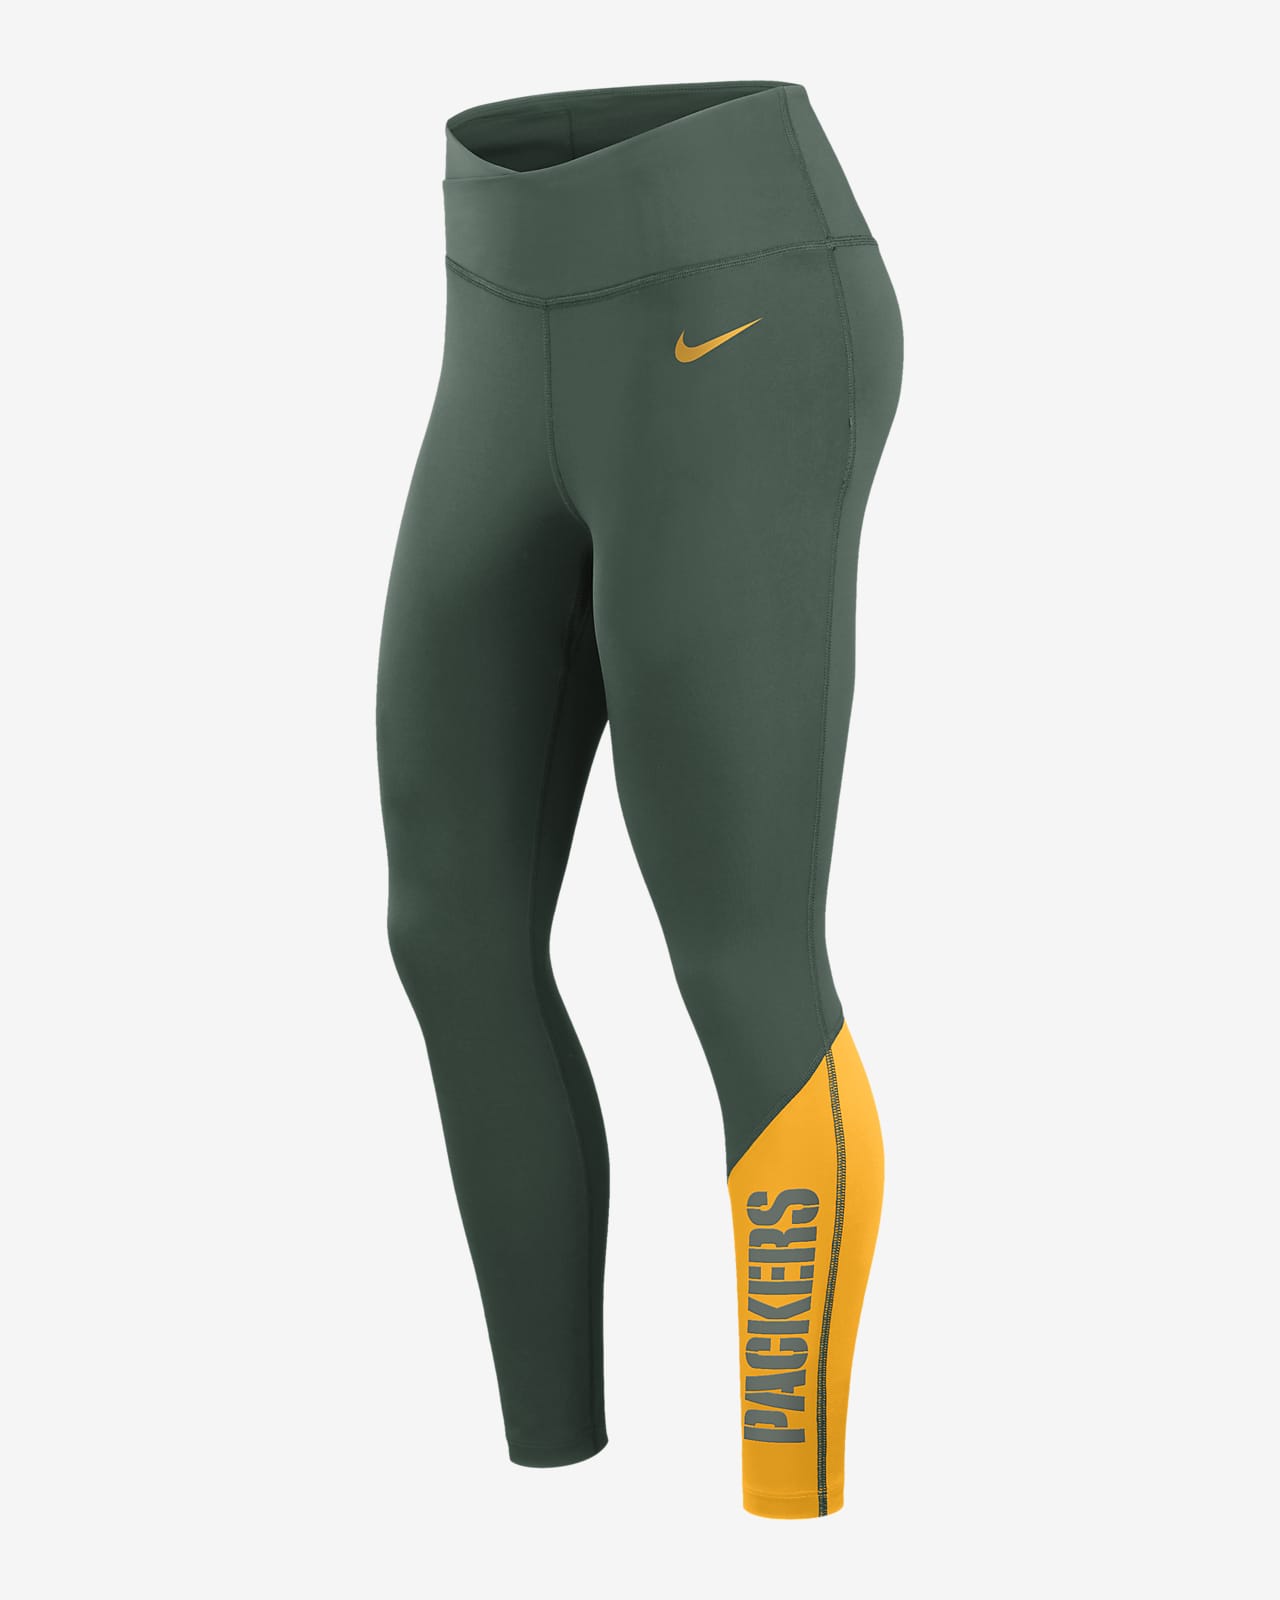 homoseksueel Voorman bestuurder Nike Dri-FIT (NFL Green Bay Packers) Women's 7/8 Leggings. Nike.com